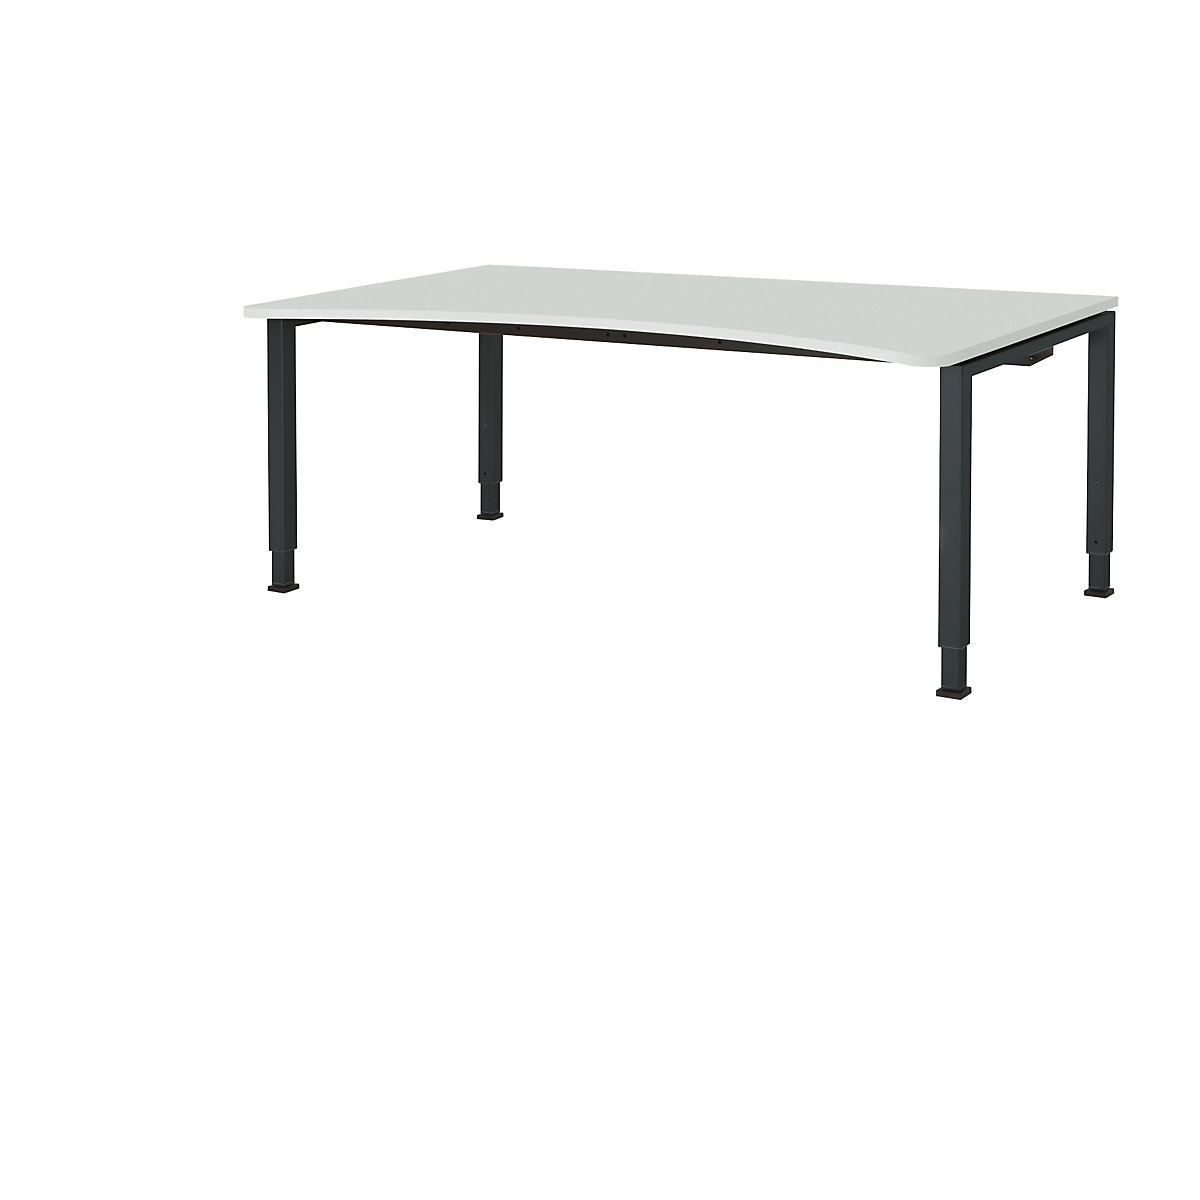 Designový stůl s přestavováním výšky – mauser